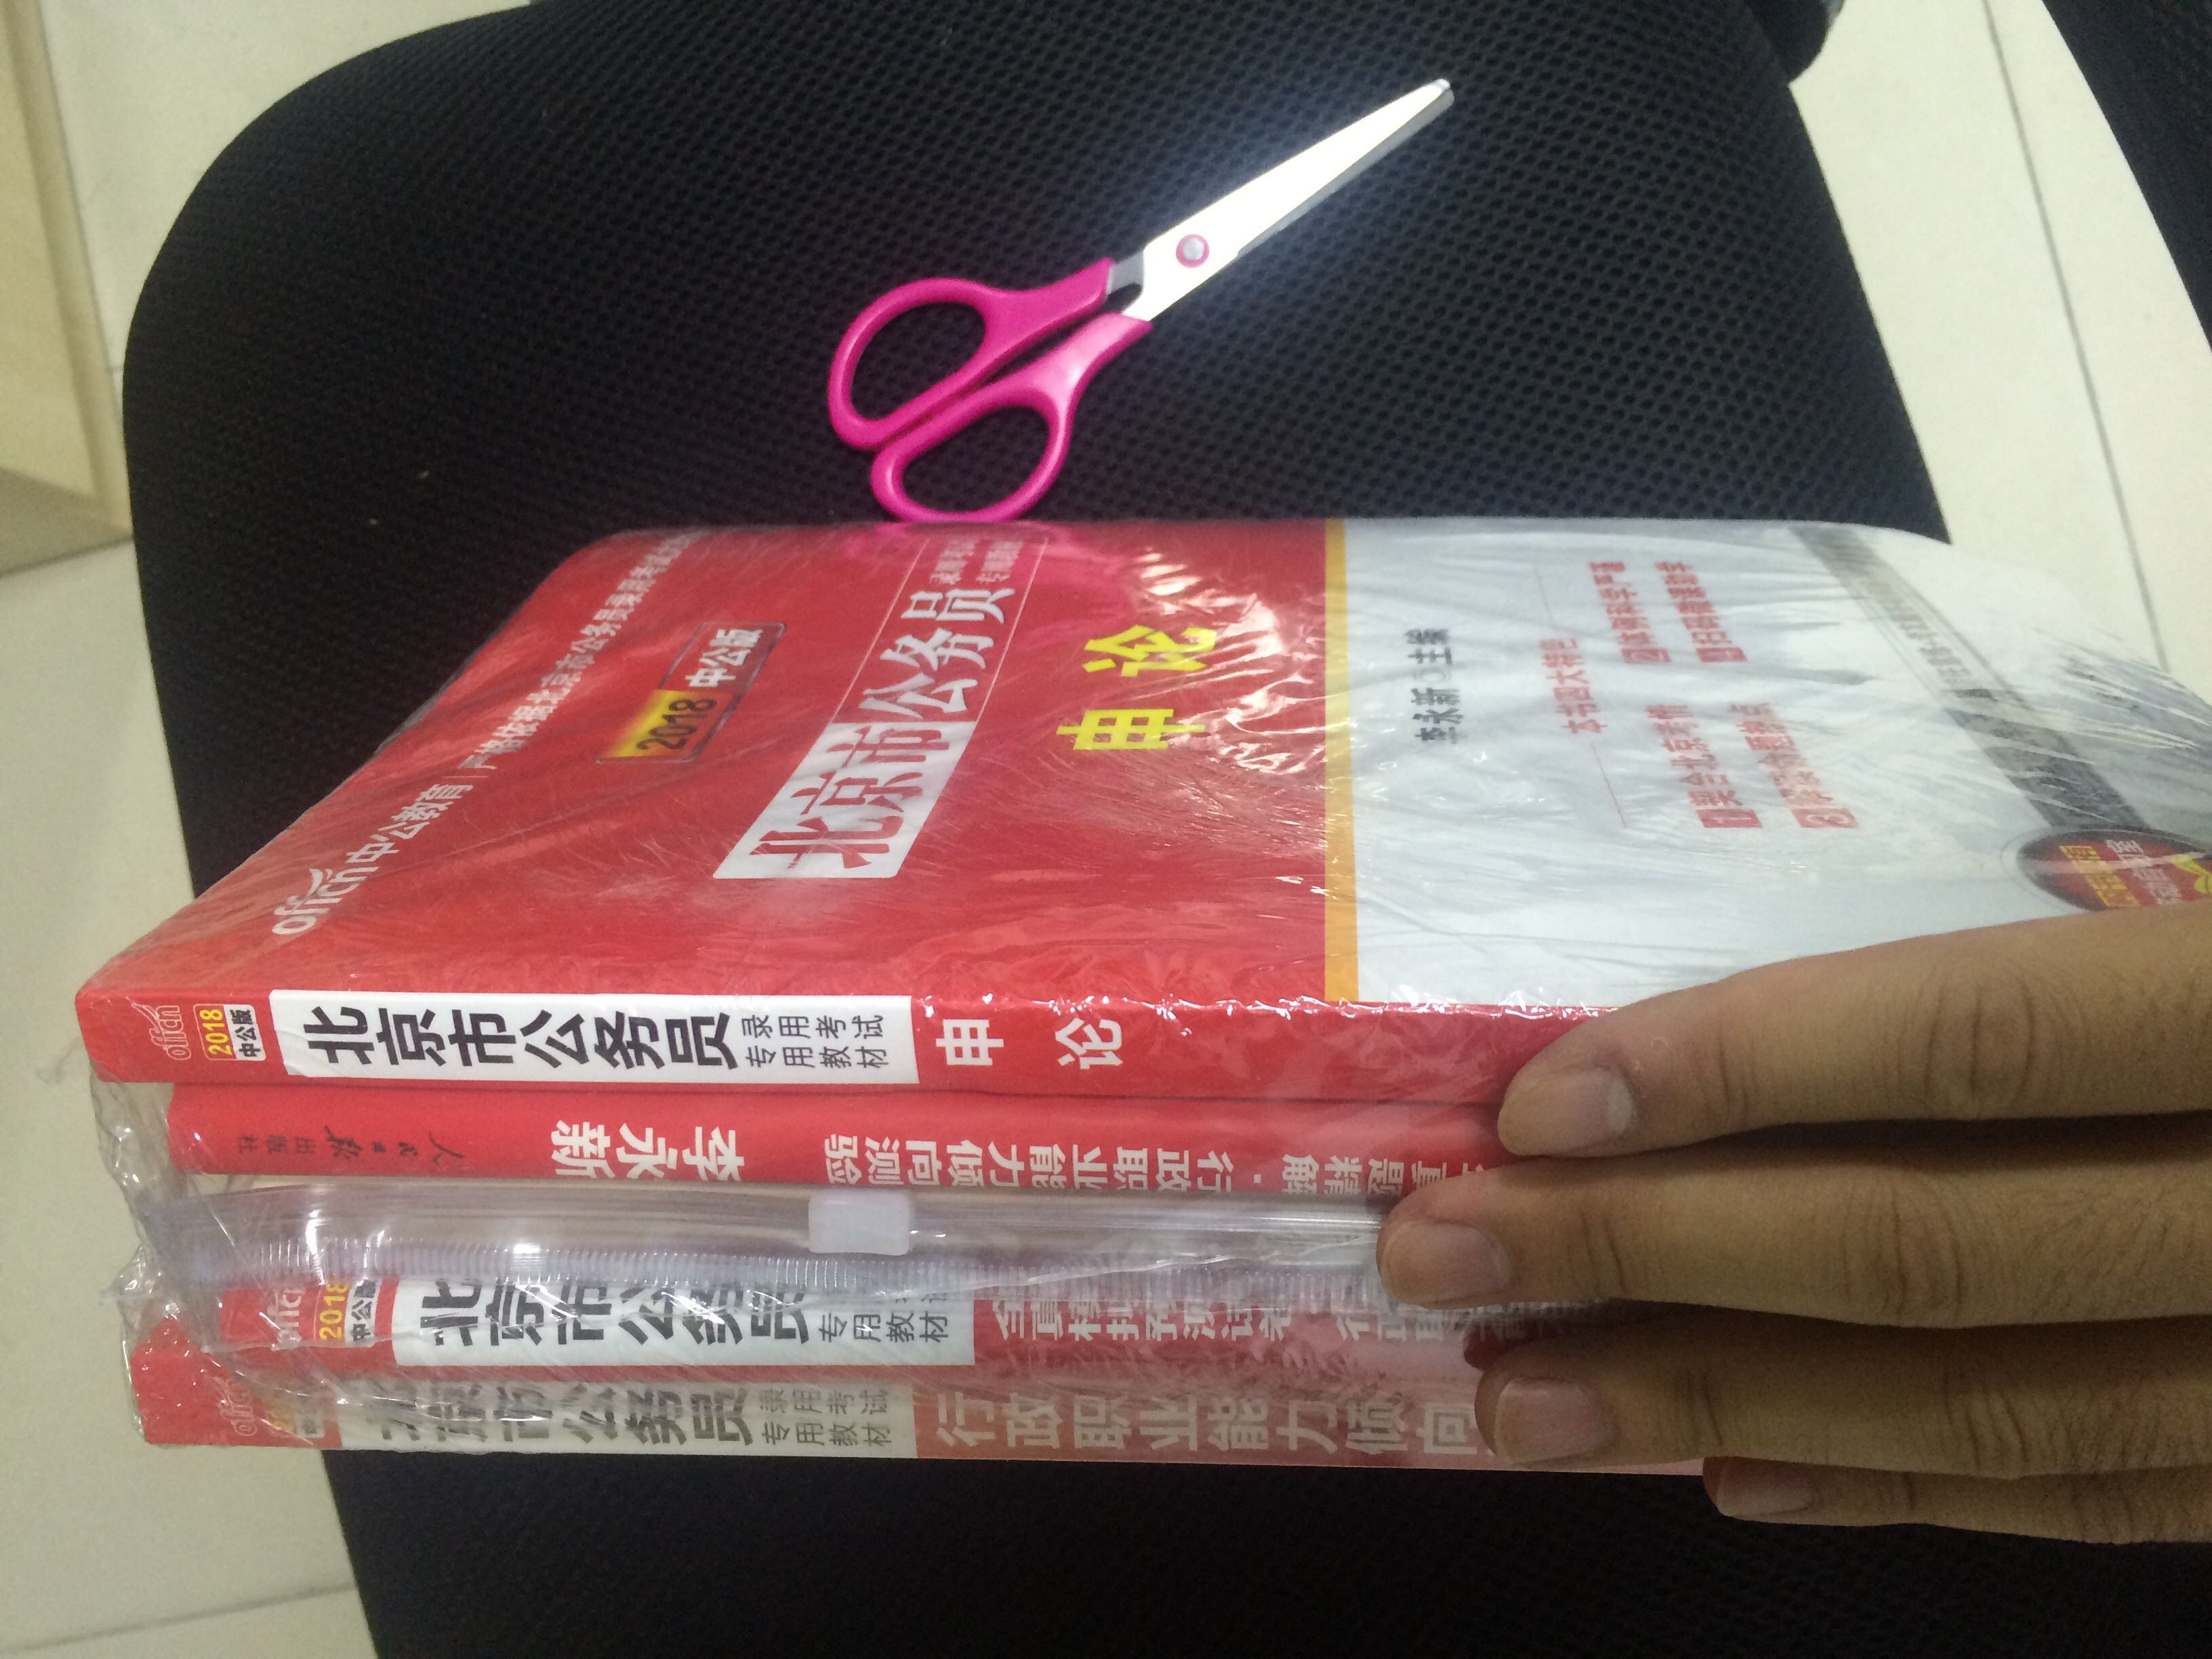 包装完好。价格还算合理。我北京本地人，买了这套。纸张质量还不错。几本书都是完好的送到手了。总体满意。